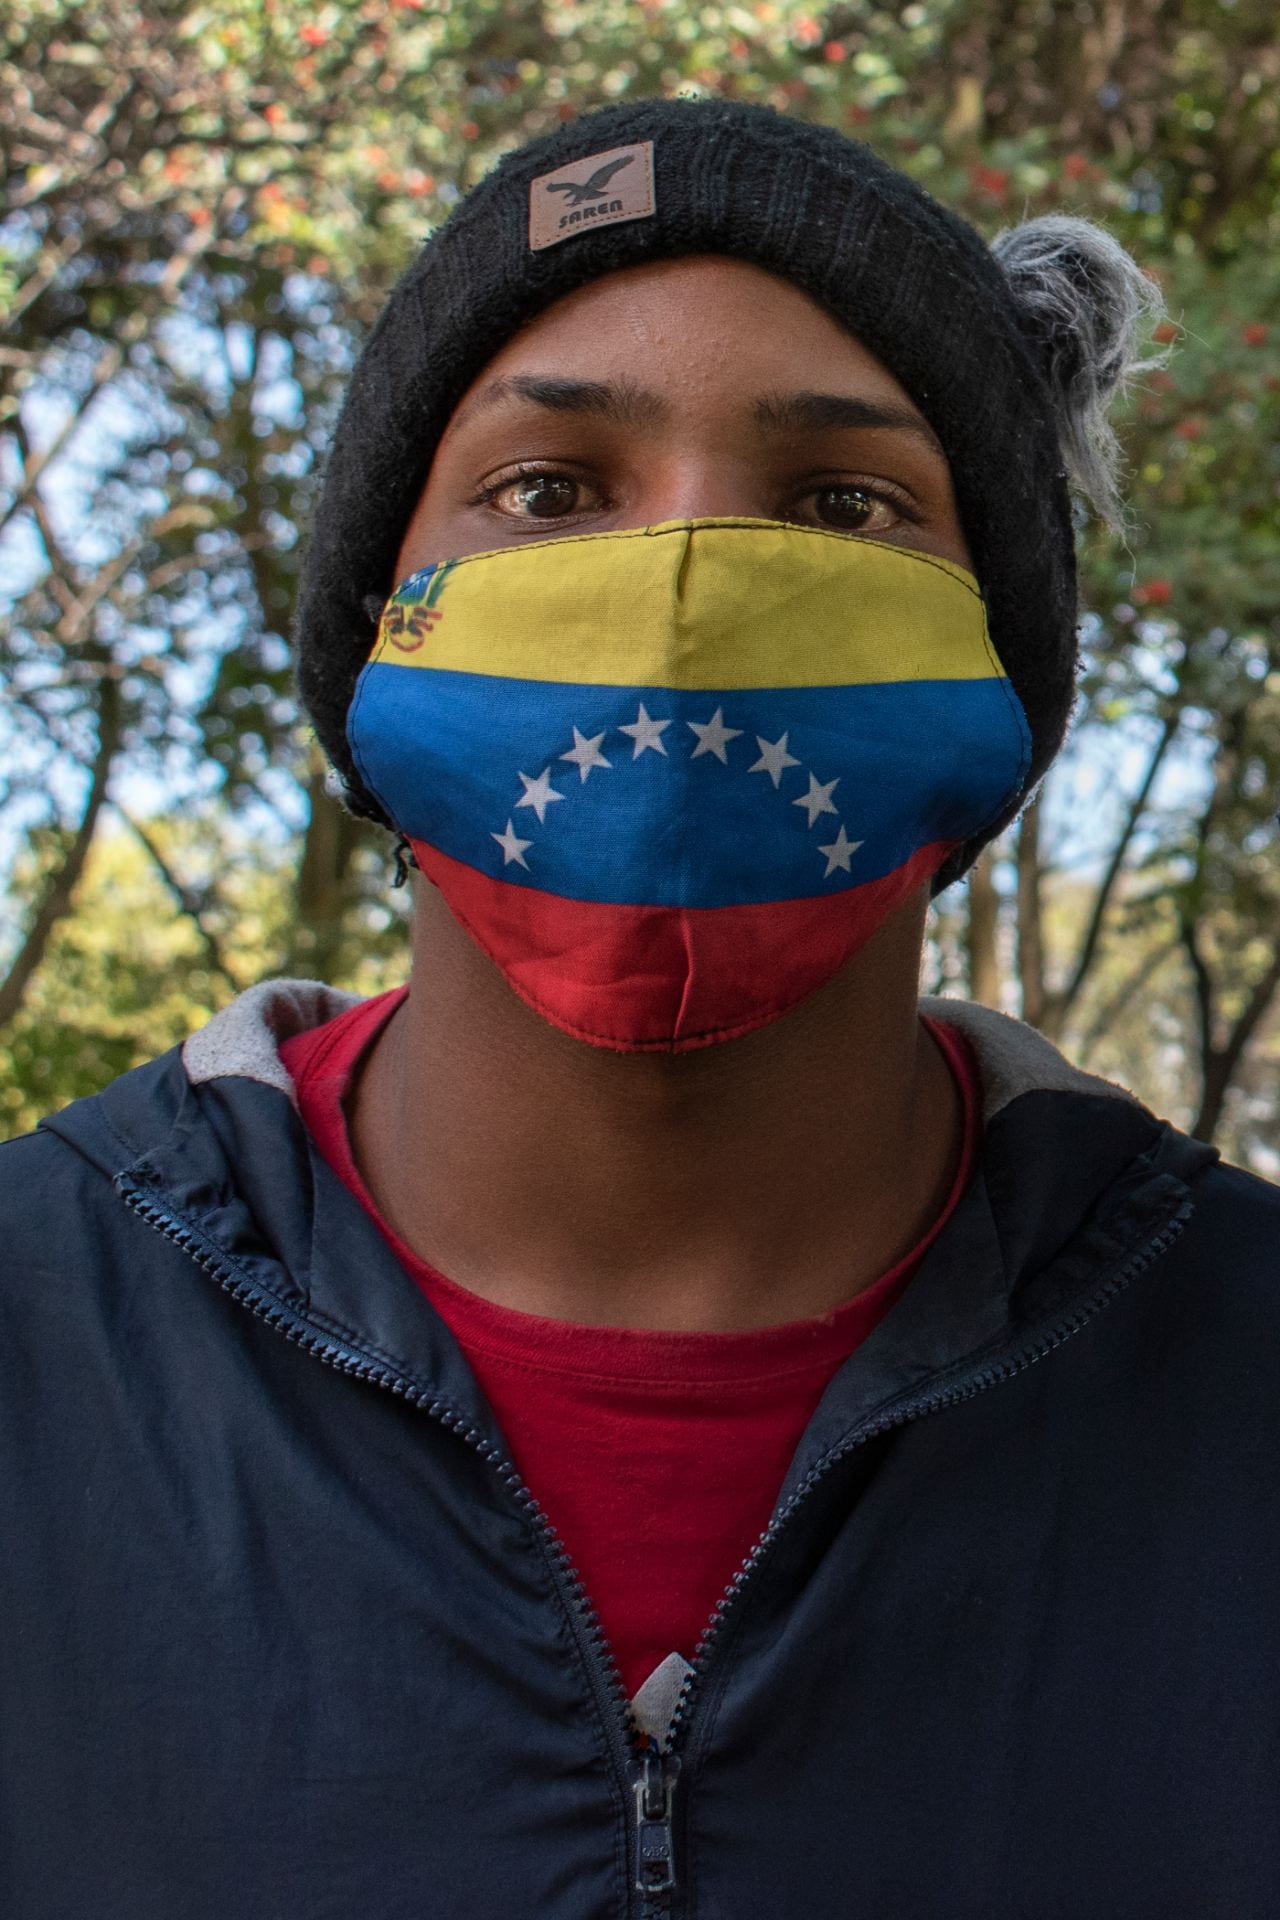 man with Venezuelan flag mask